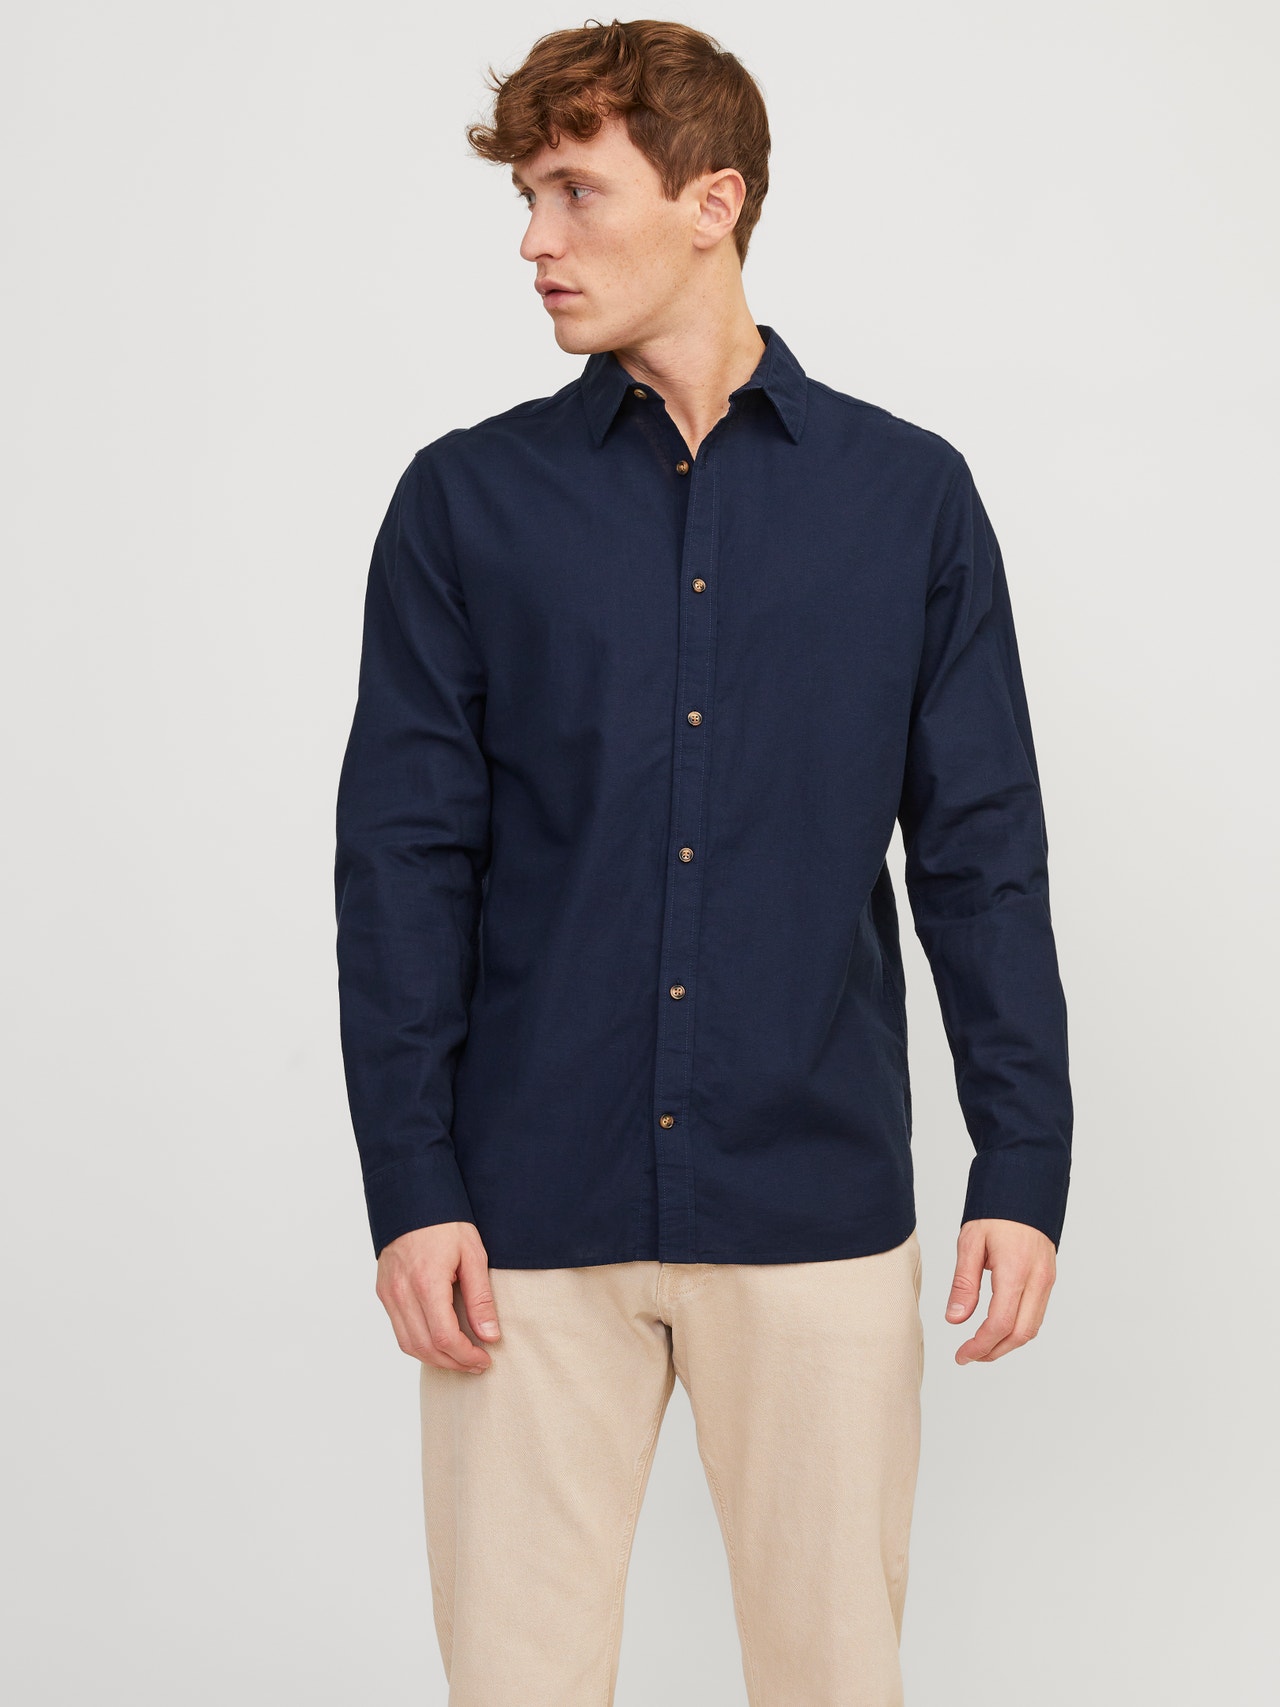 Jack & Jones Camisa Comfort Fit -Navy Blazer - 12248384